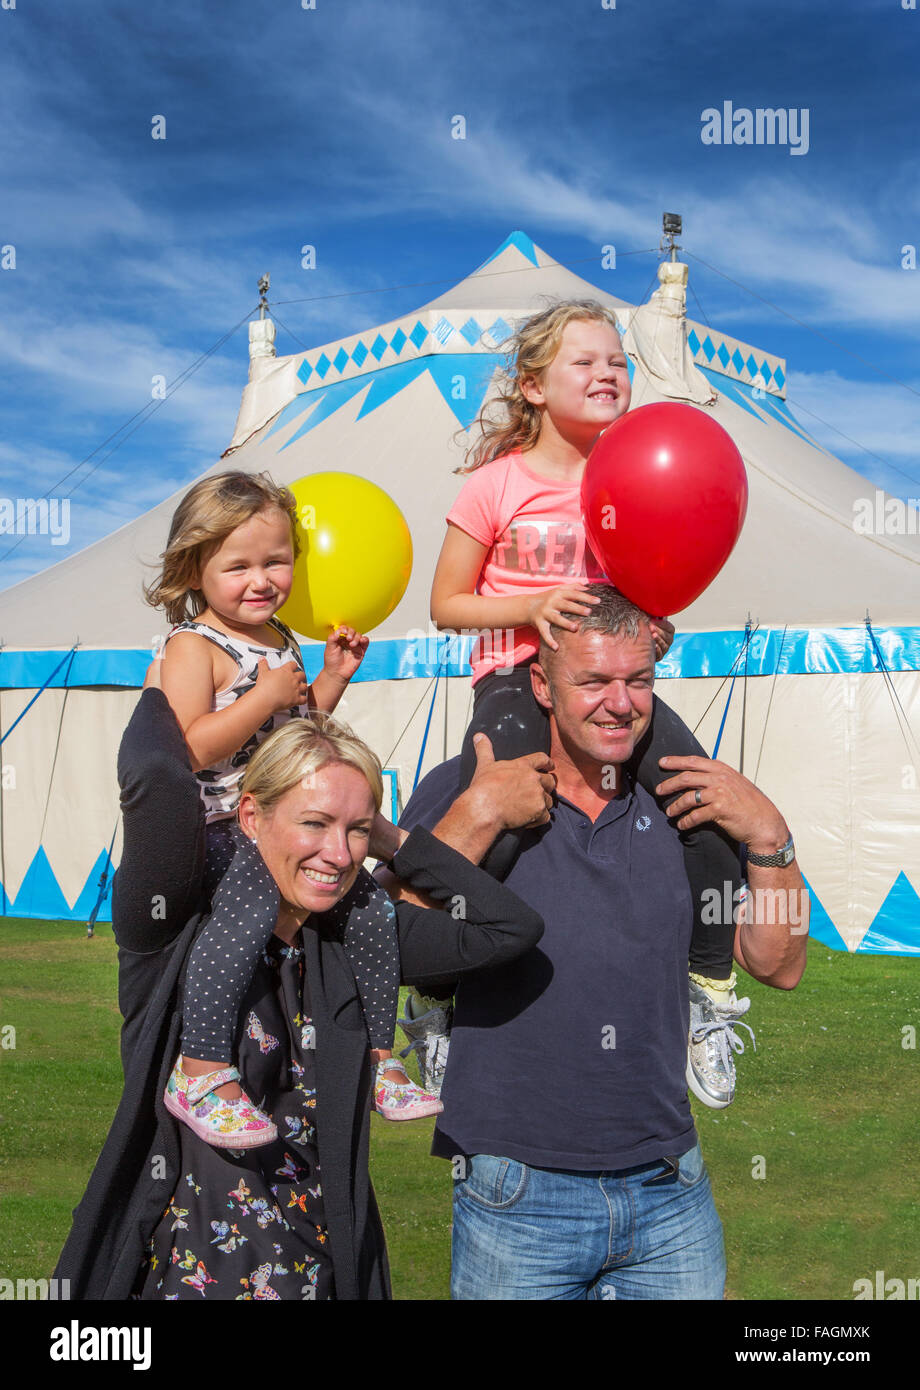 Eine glückliche Familie verlassen das Zirkuszelt nach einem Ausflug in den Zirkus in Bucht Sonne mit blauem Himmel und Ballon Stockfoto